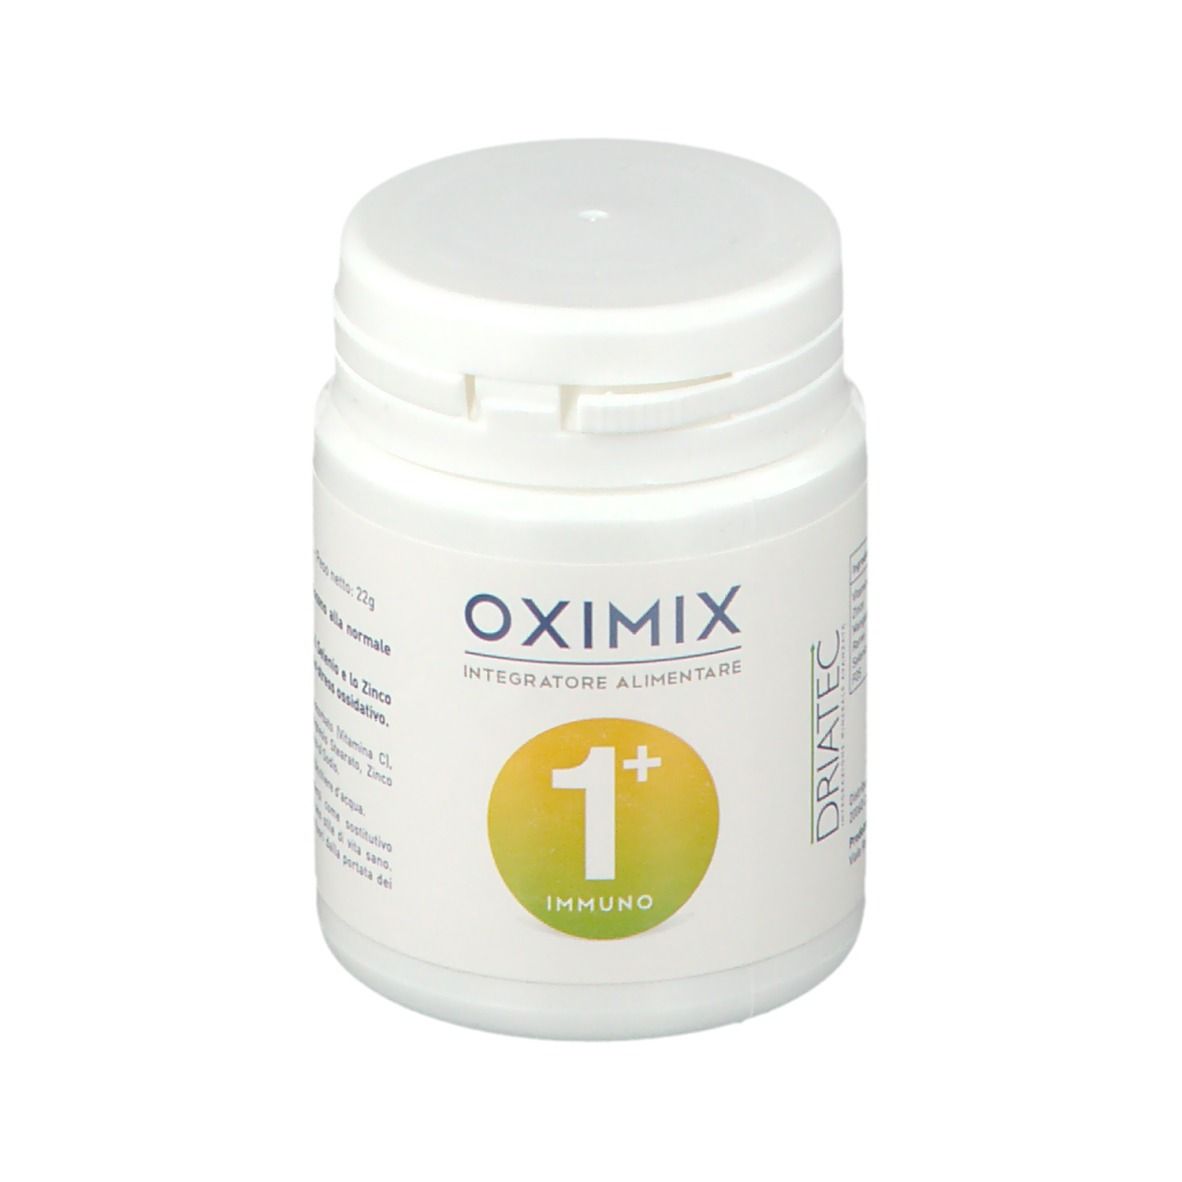 Image of Driatec Oximix 1+ Immuno